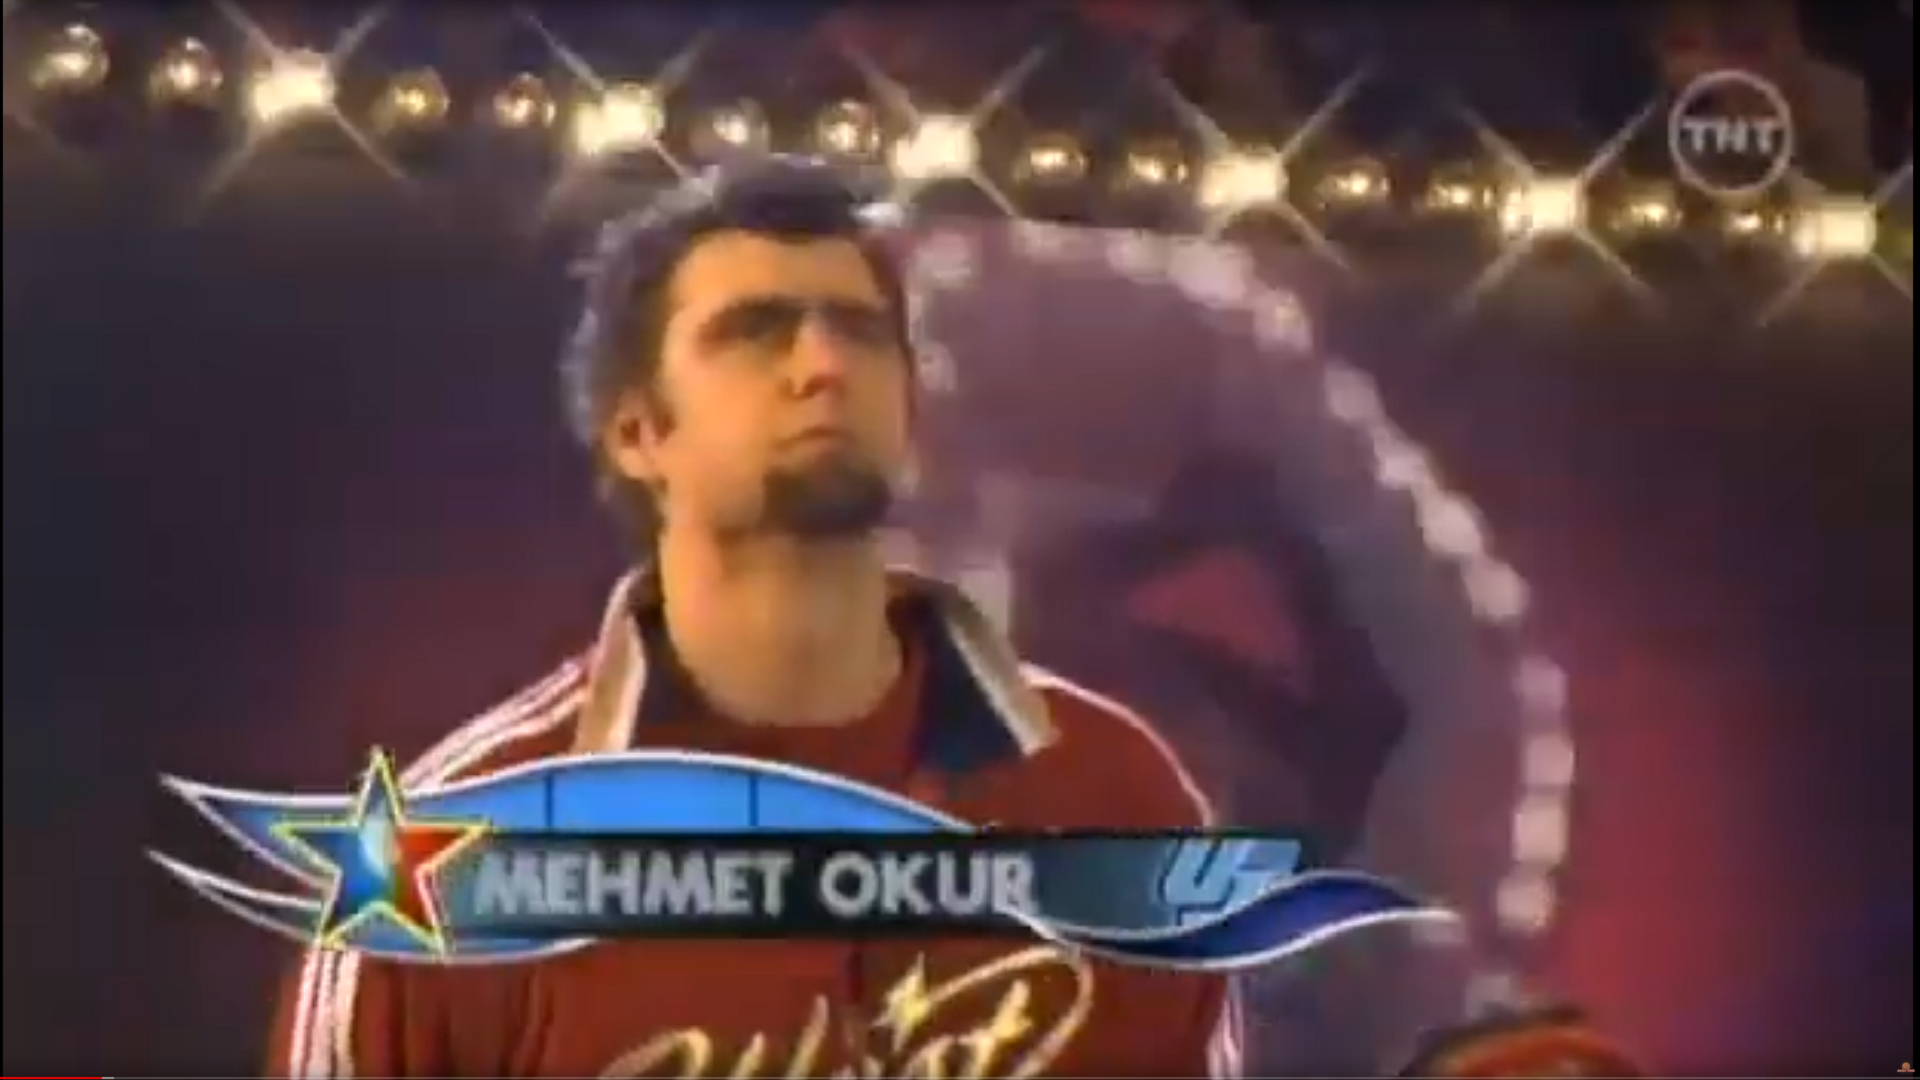 Mehmet Okur 26/05/2020